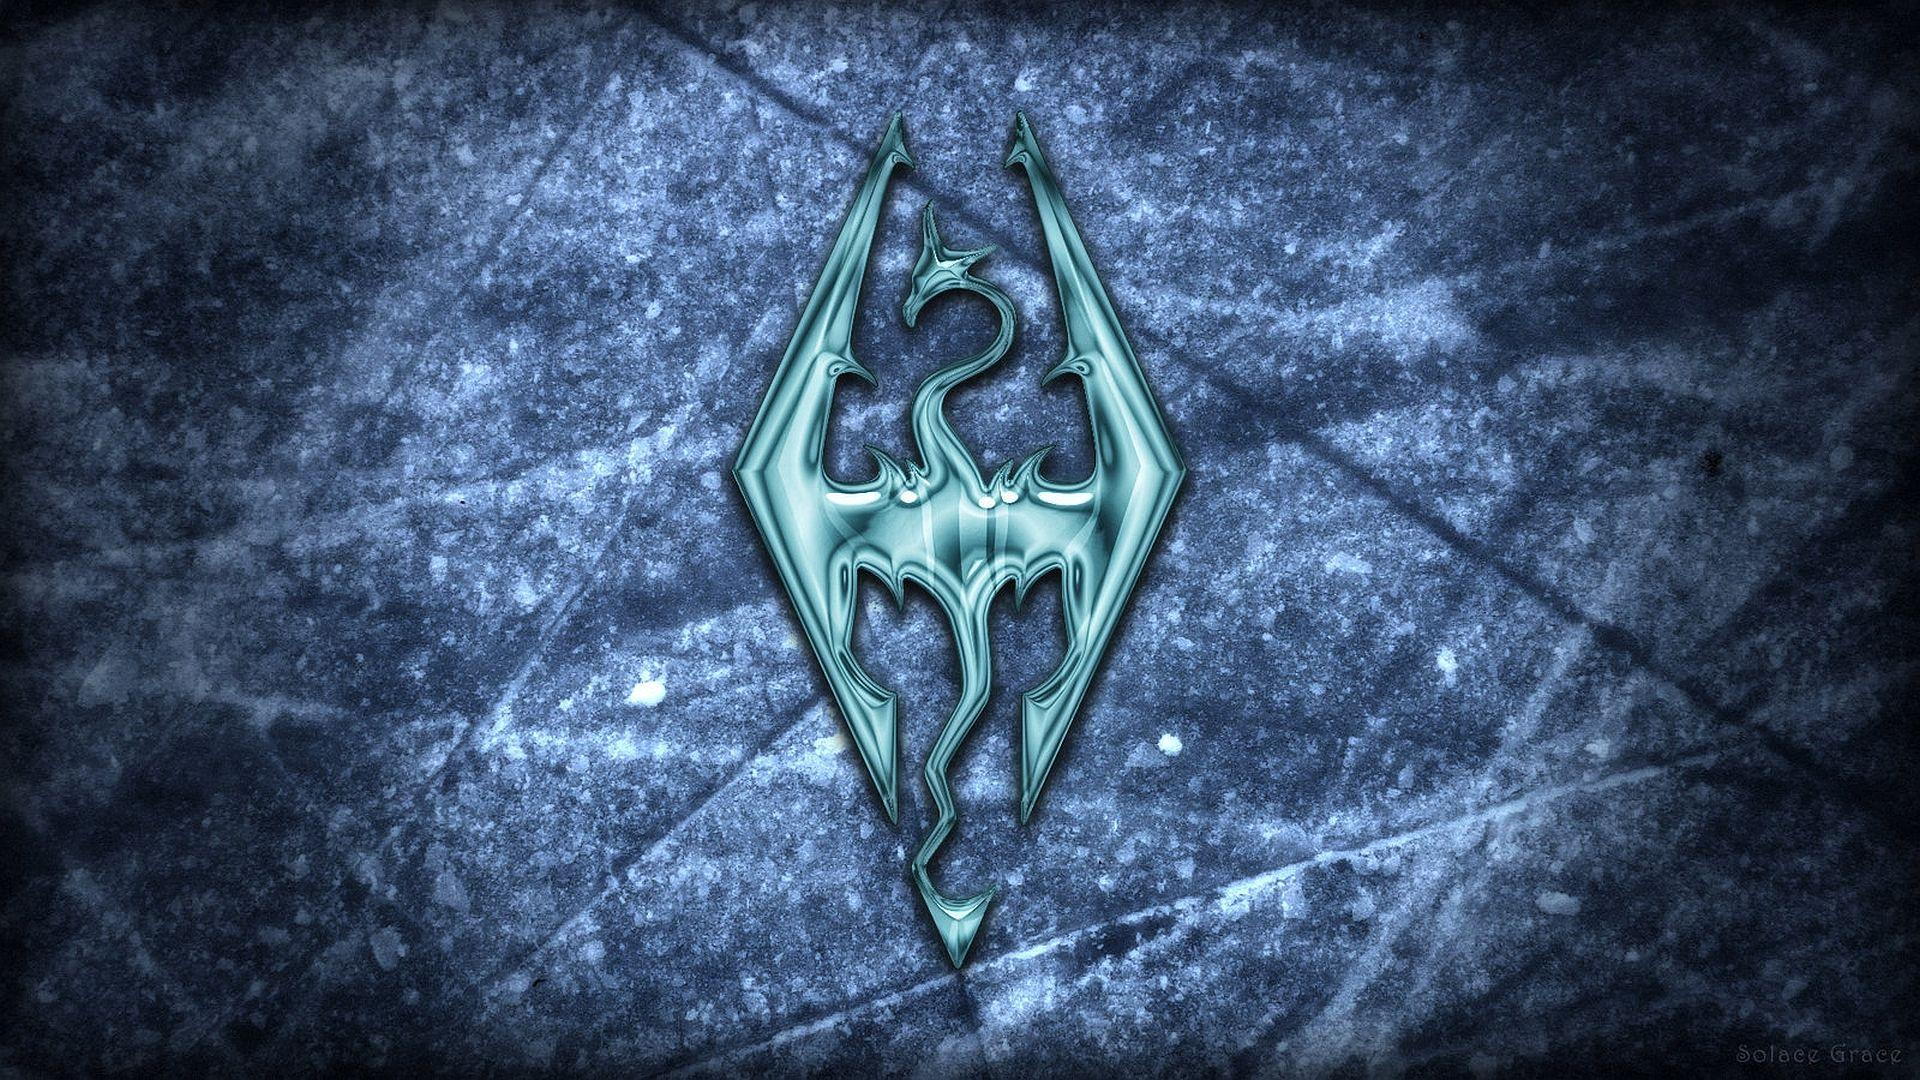 Wallpaper The Elder Scrolls V: Skyrim logo on the ice The Elder